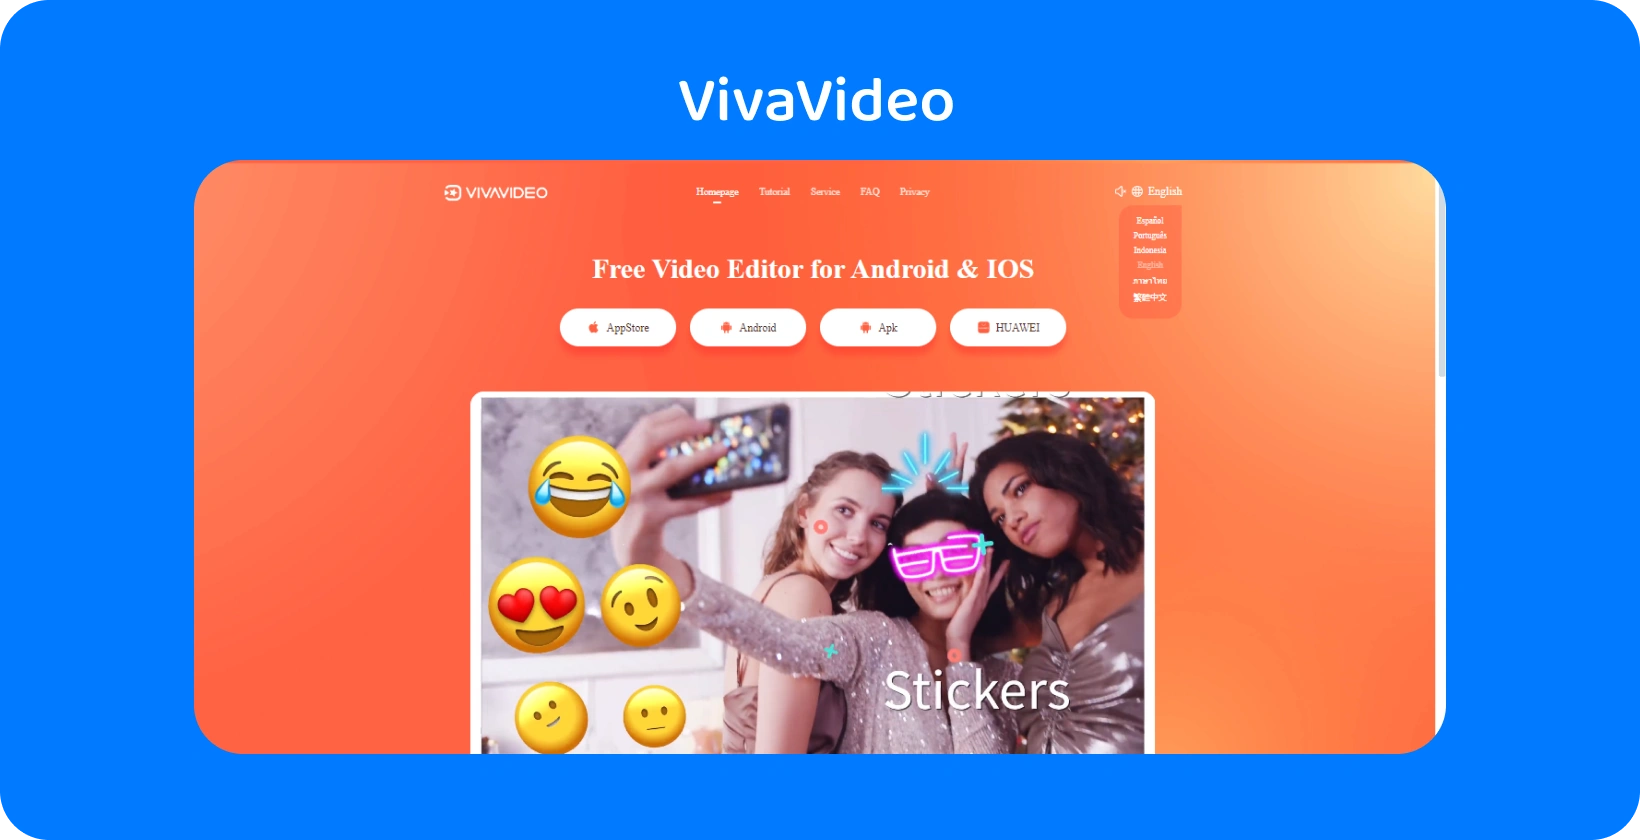 VivaVideo página do aplicativo com um fundo laranja vibrante, exibindo recursos de adesivos para aprimorar vídeos em Android e iOS.
